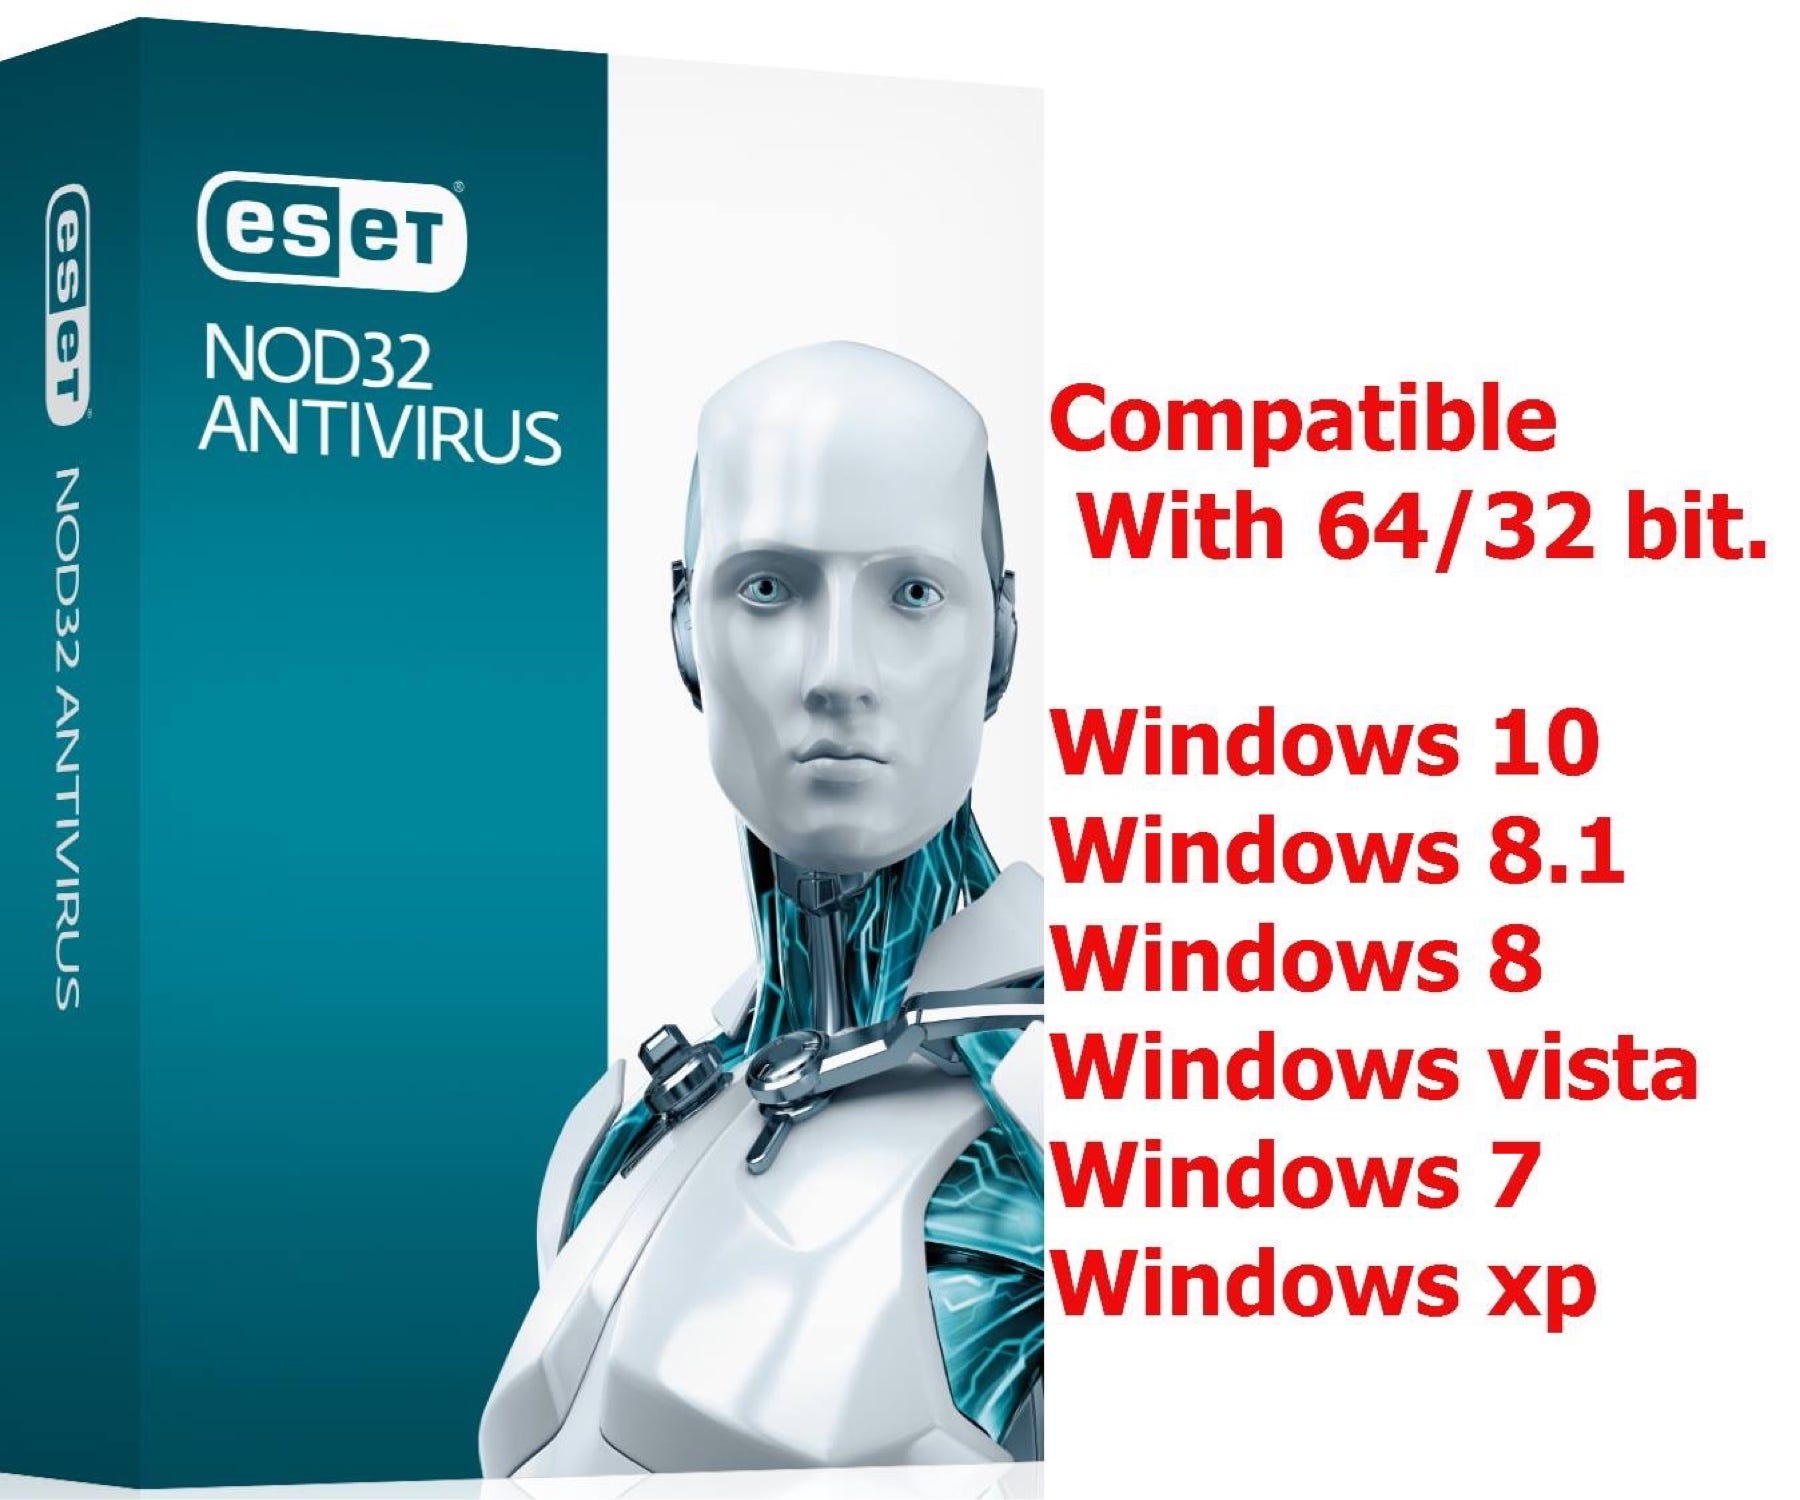 Версии есет нод 32. ESET nod32 антивирус. ESET nod32 описание антивируса. Nod32 антивирус логотип. ESET nod32 Smart Security 10.